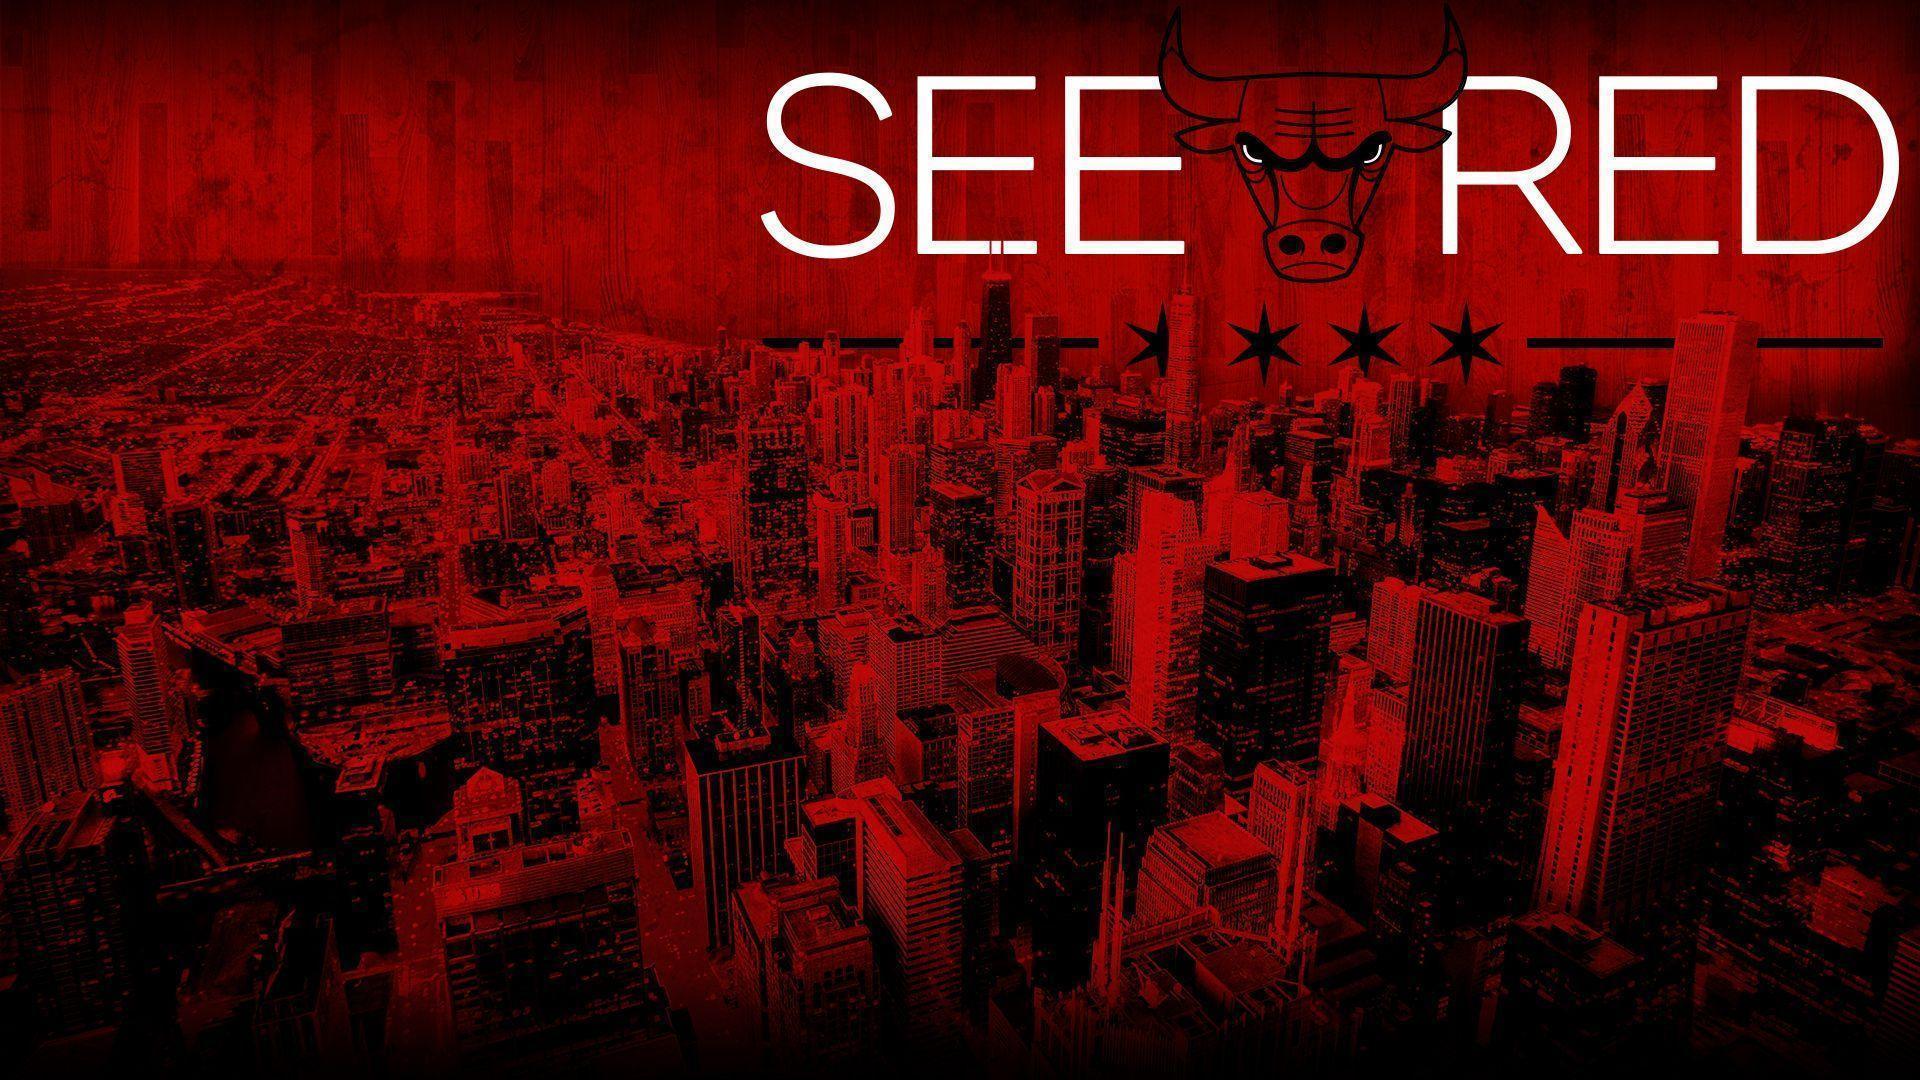 SeeRed: #Chicago skyline #wallpaper. Chicago Bulls Wallpaper